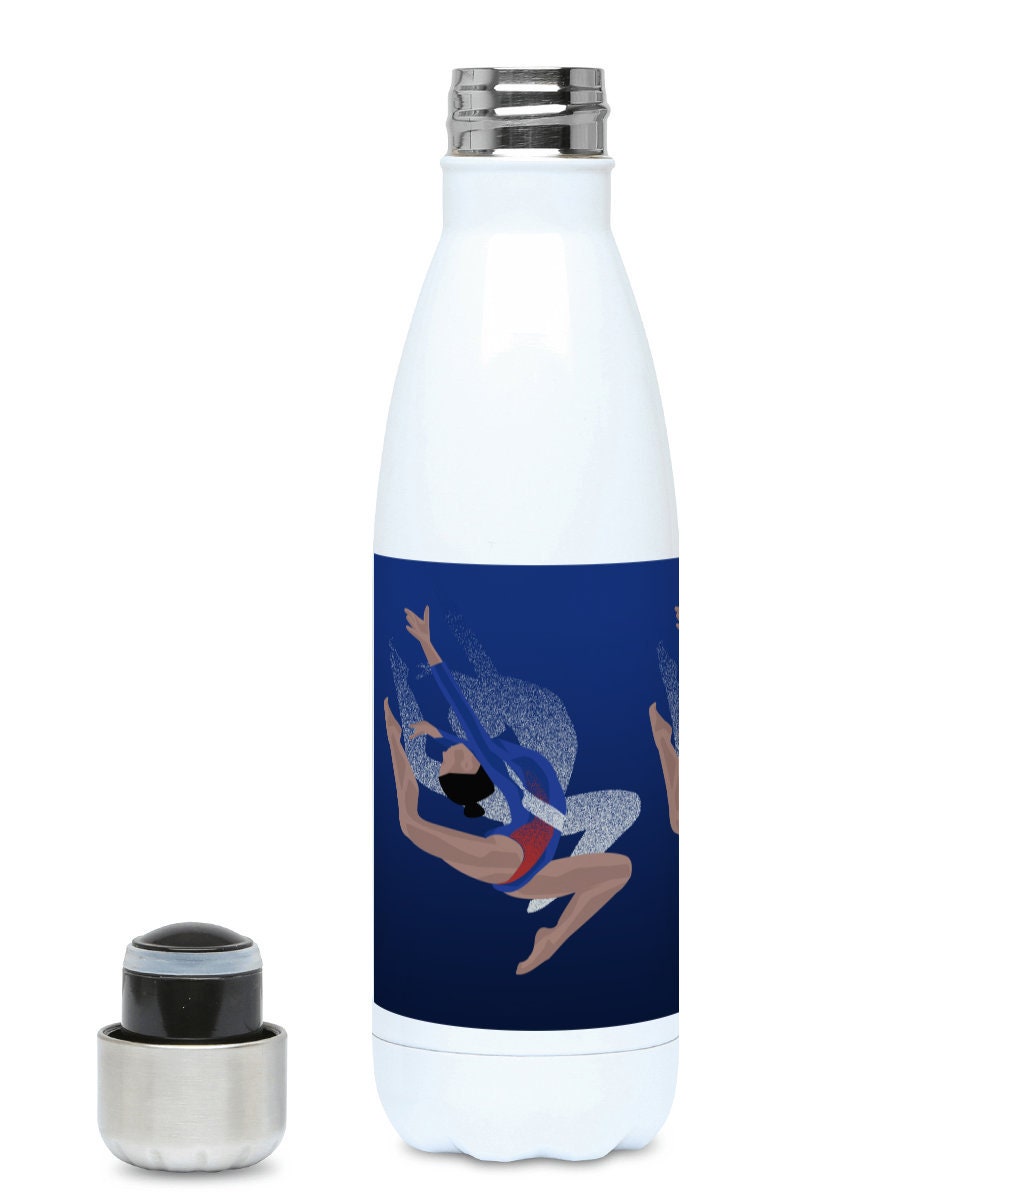 Cadeau de Bouteille d'eau Gymnastique à Personnaliser en Bleu Pour Un Gymnaste Adolescent ou Entraîn